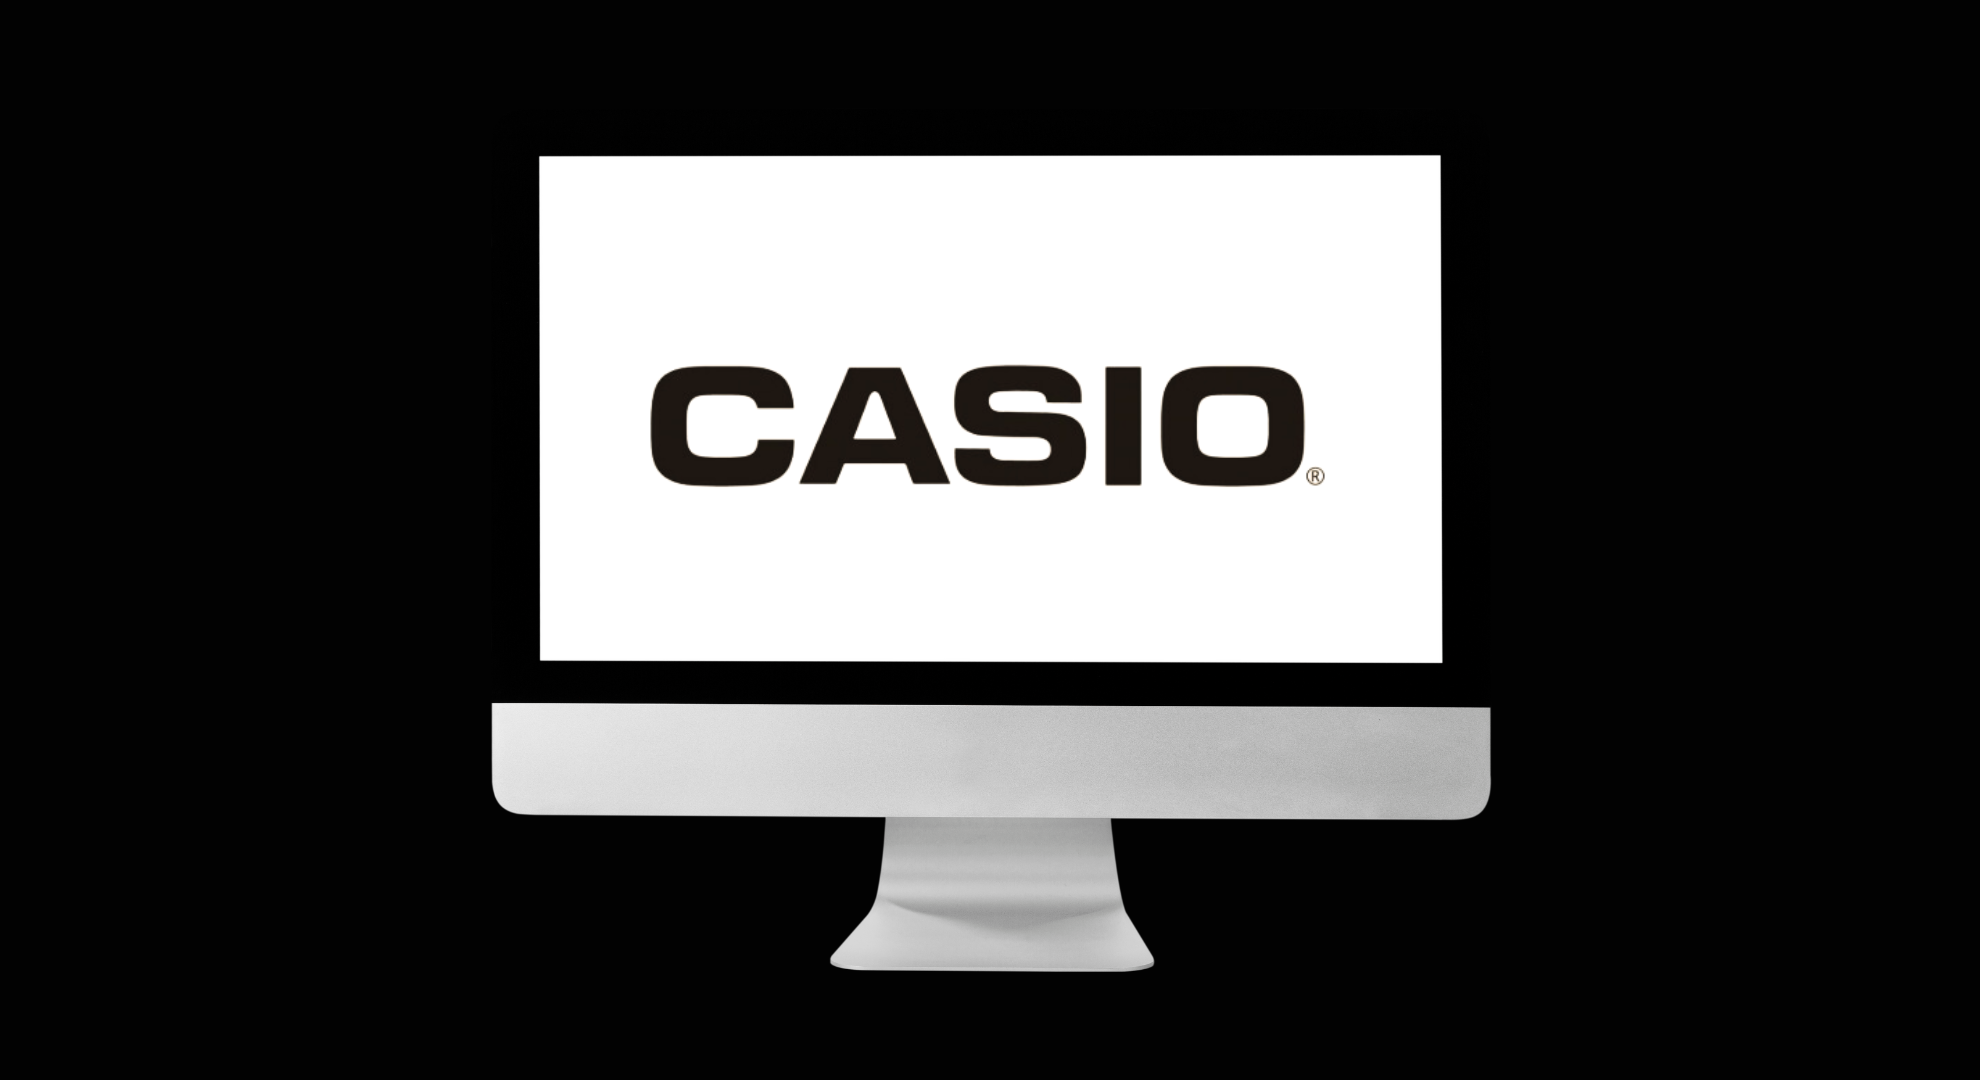 Casio's Data Breach